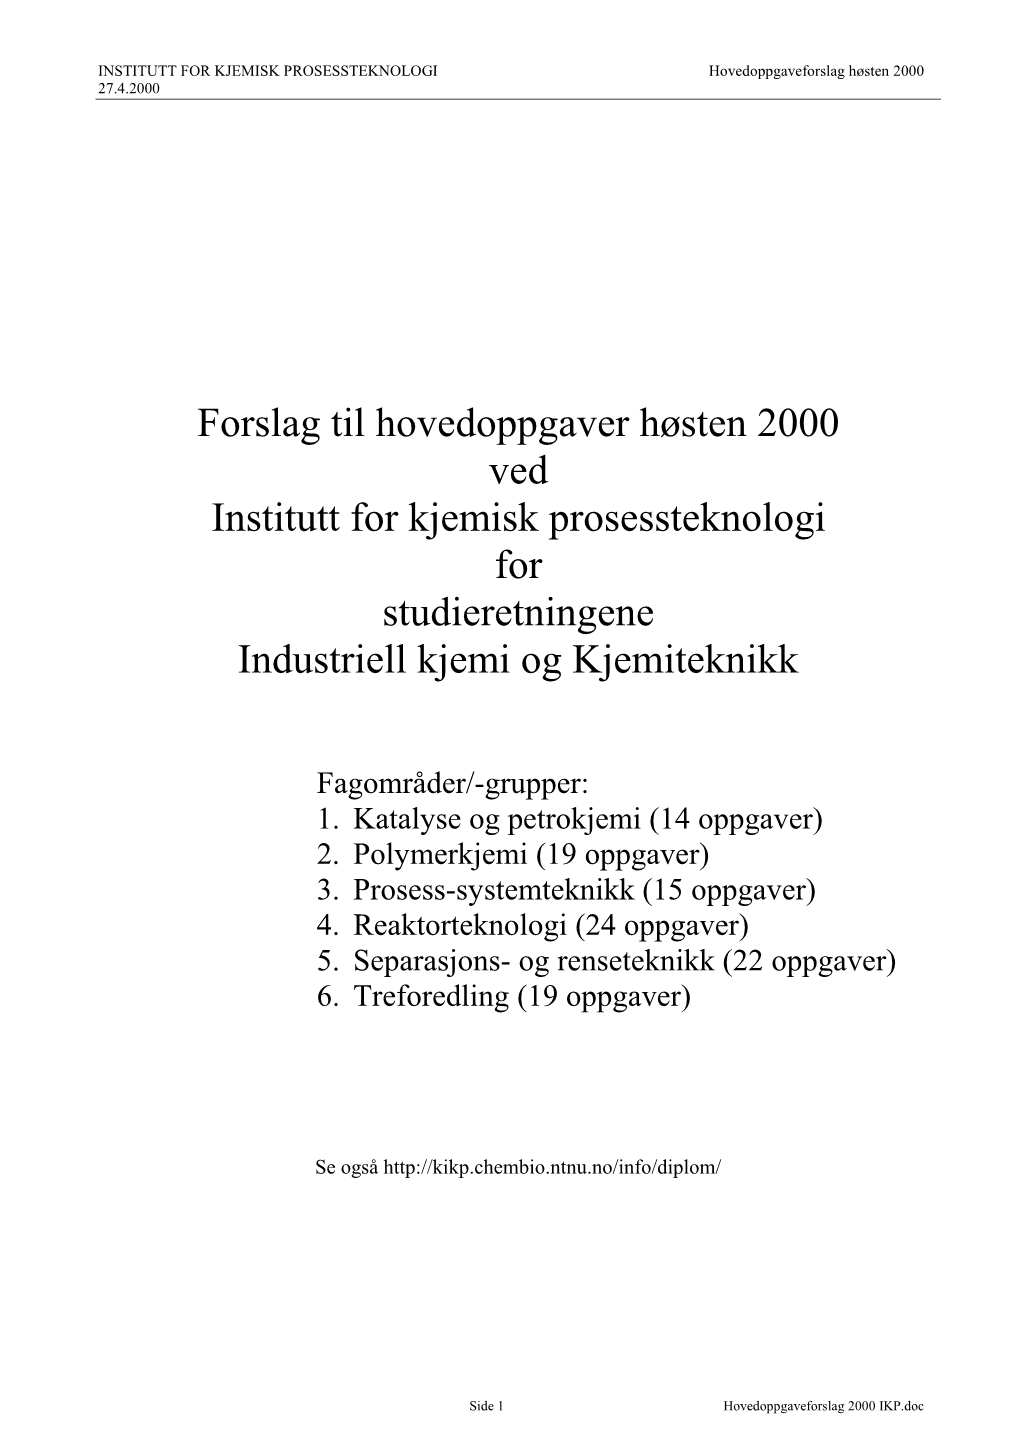 Forslag Til Hovedoppgaver Høsten 2000 Ved Institutt for Kjemisk Prosessteknologi for Studieretningene Industriell Kjemi Og Kjemiteknikk